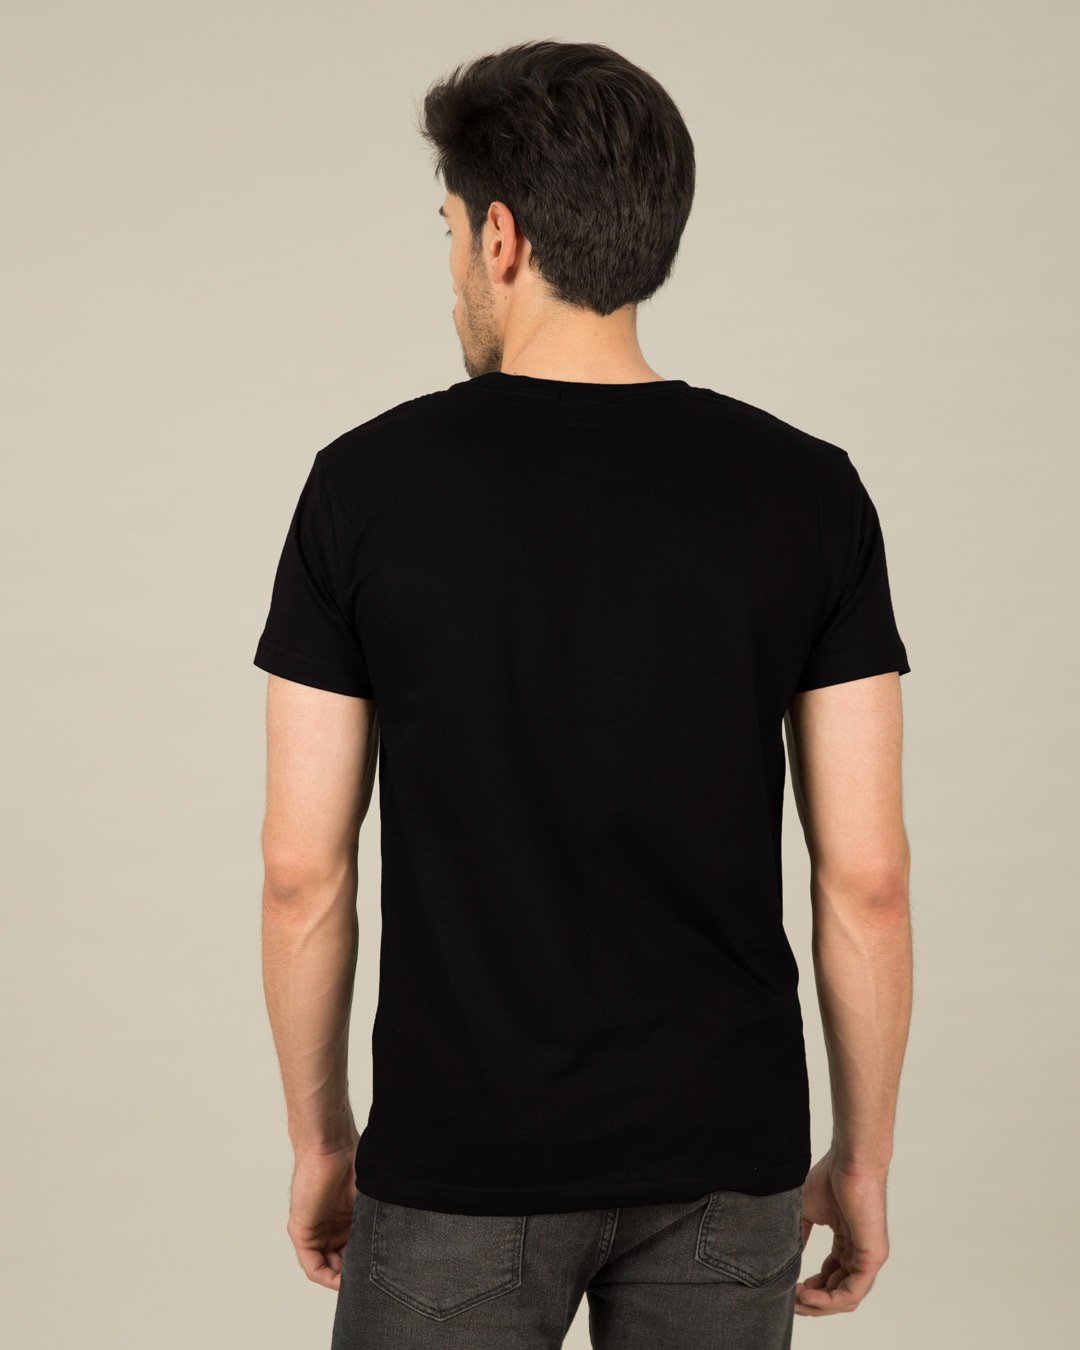 jet-black-half-sleeve-t-shirt-men-s-plain-t-shirts-106-1560838110 for him Jet Black